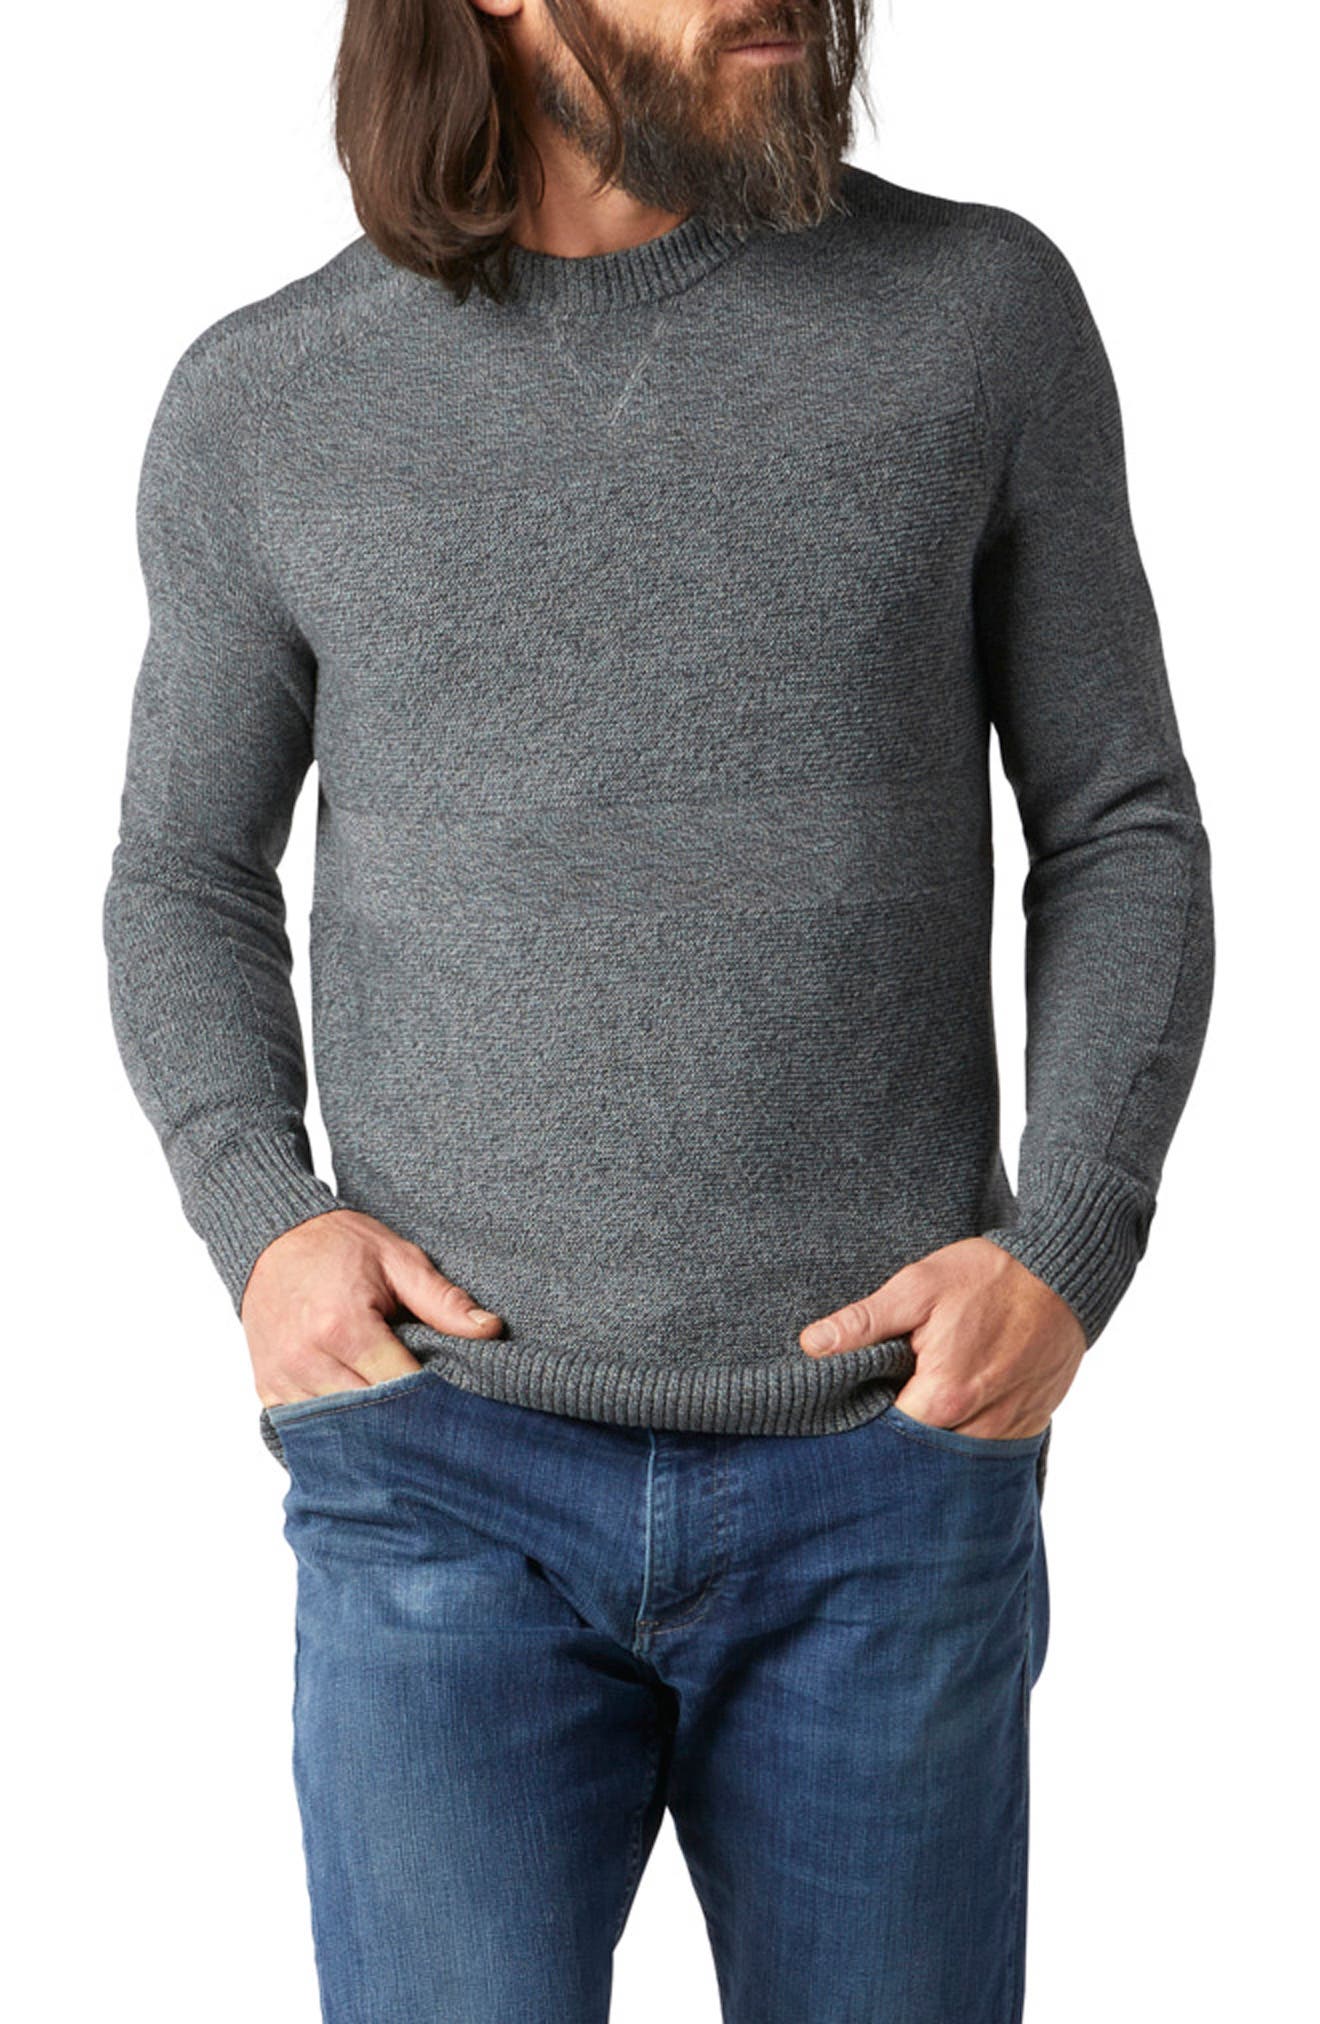 Smartwool Men's Sweater Best Sale, 55% OFF | www.ingeniovirtual.com